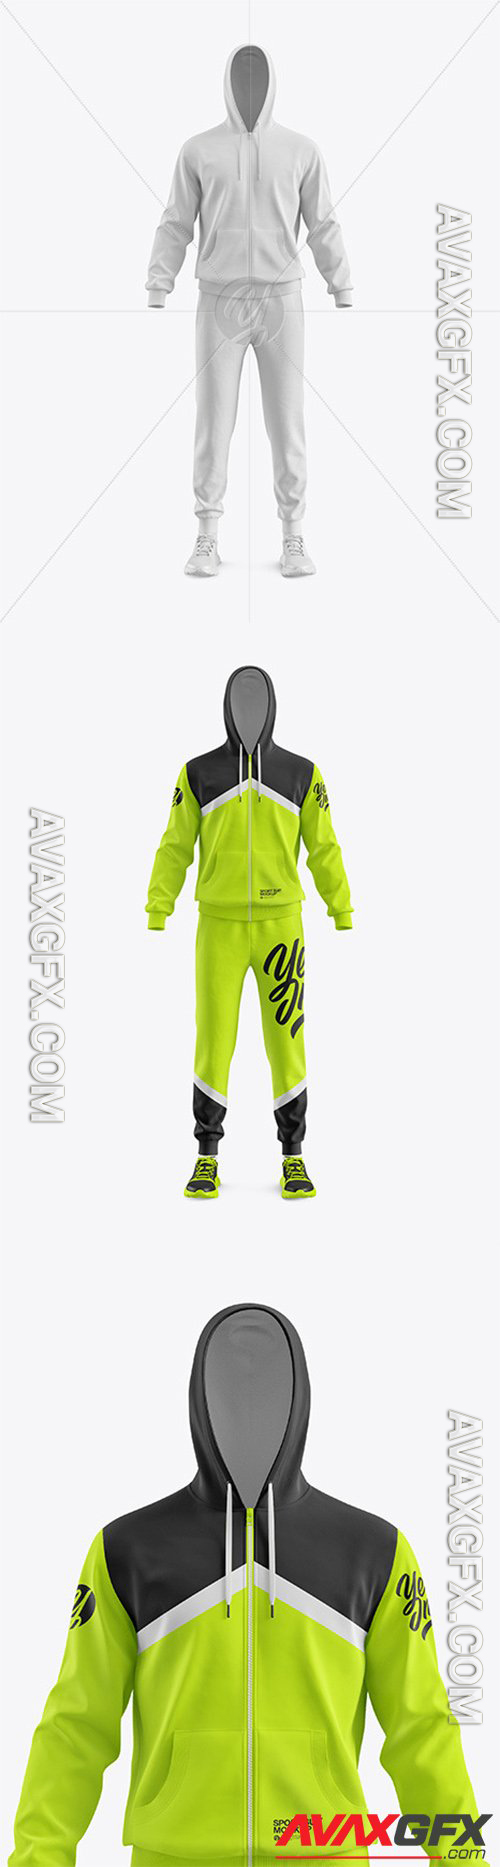 Men's Sport Suit Mockup - Front View 56528